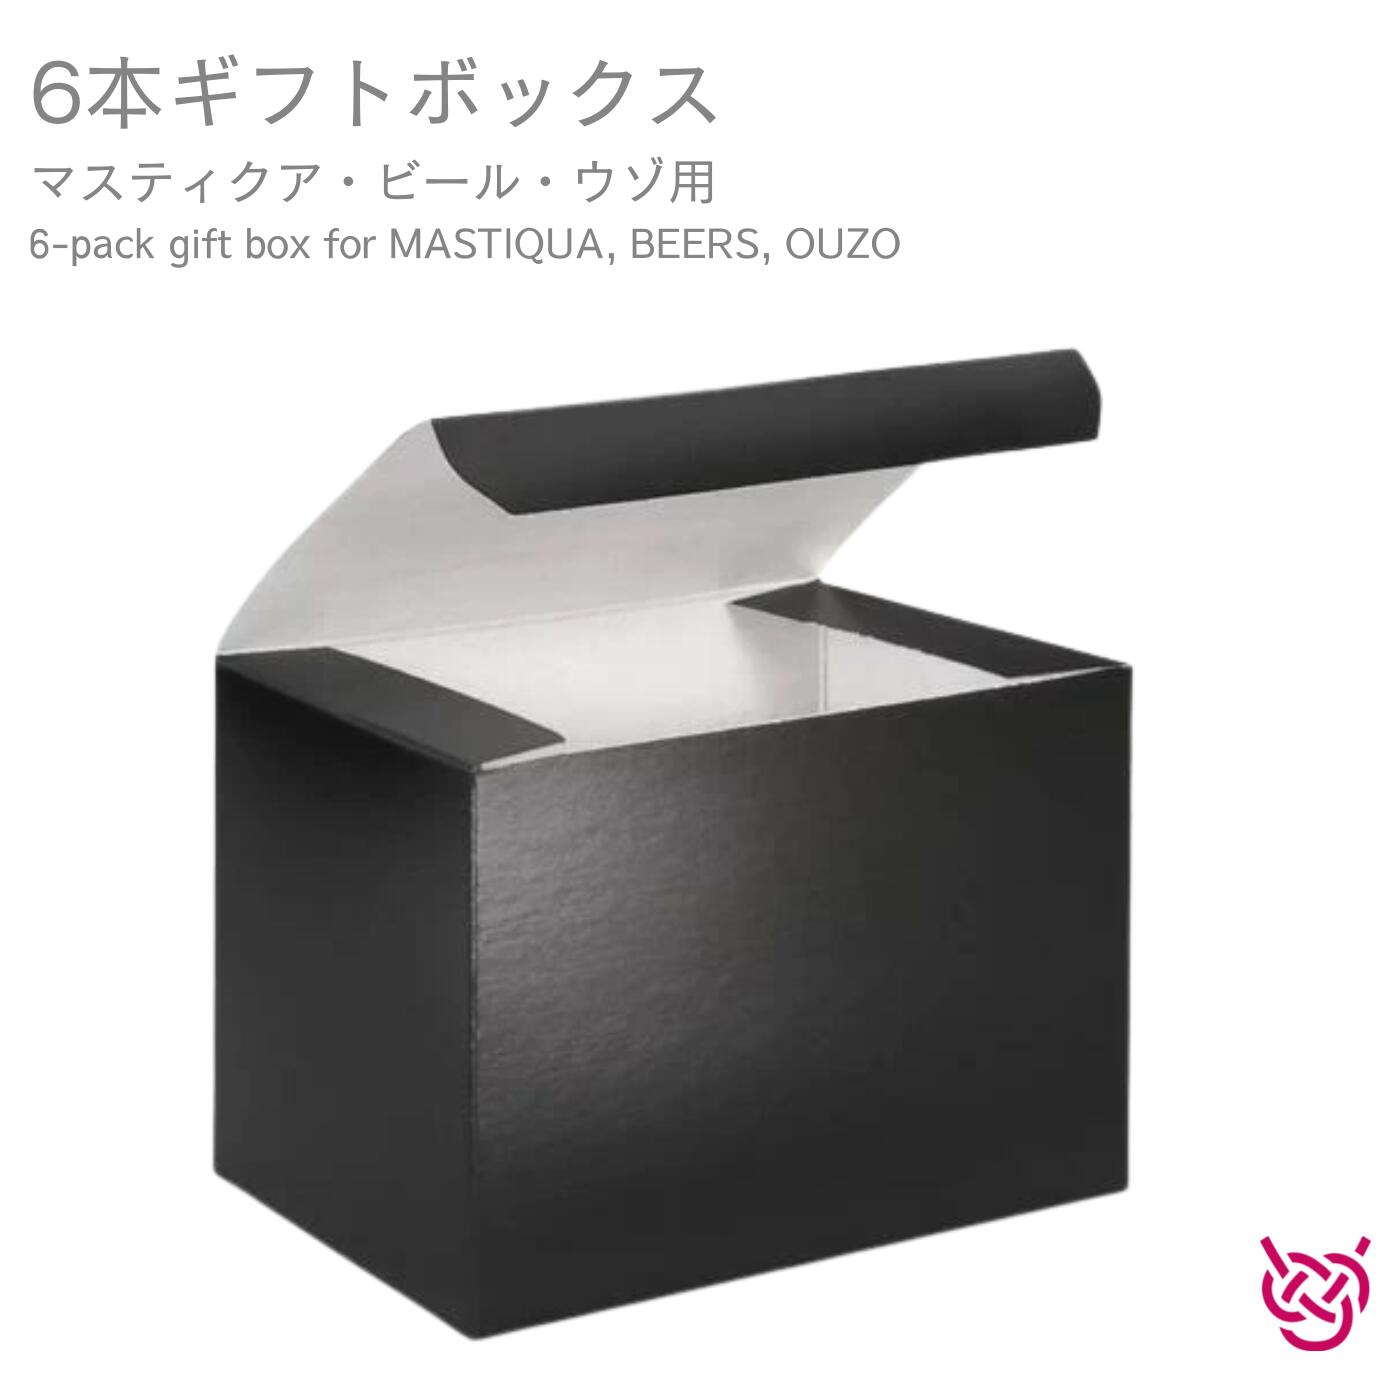 6本ギフトボックス(マスティクア・ビール・ウゾ用) 6-pack gift box for MASTIQUA, BEERS, OUZO ギフト ギフトに プレゼント お祝い 贈り物 お酒 お中元 お歳暮 お土産 のし代無料